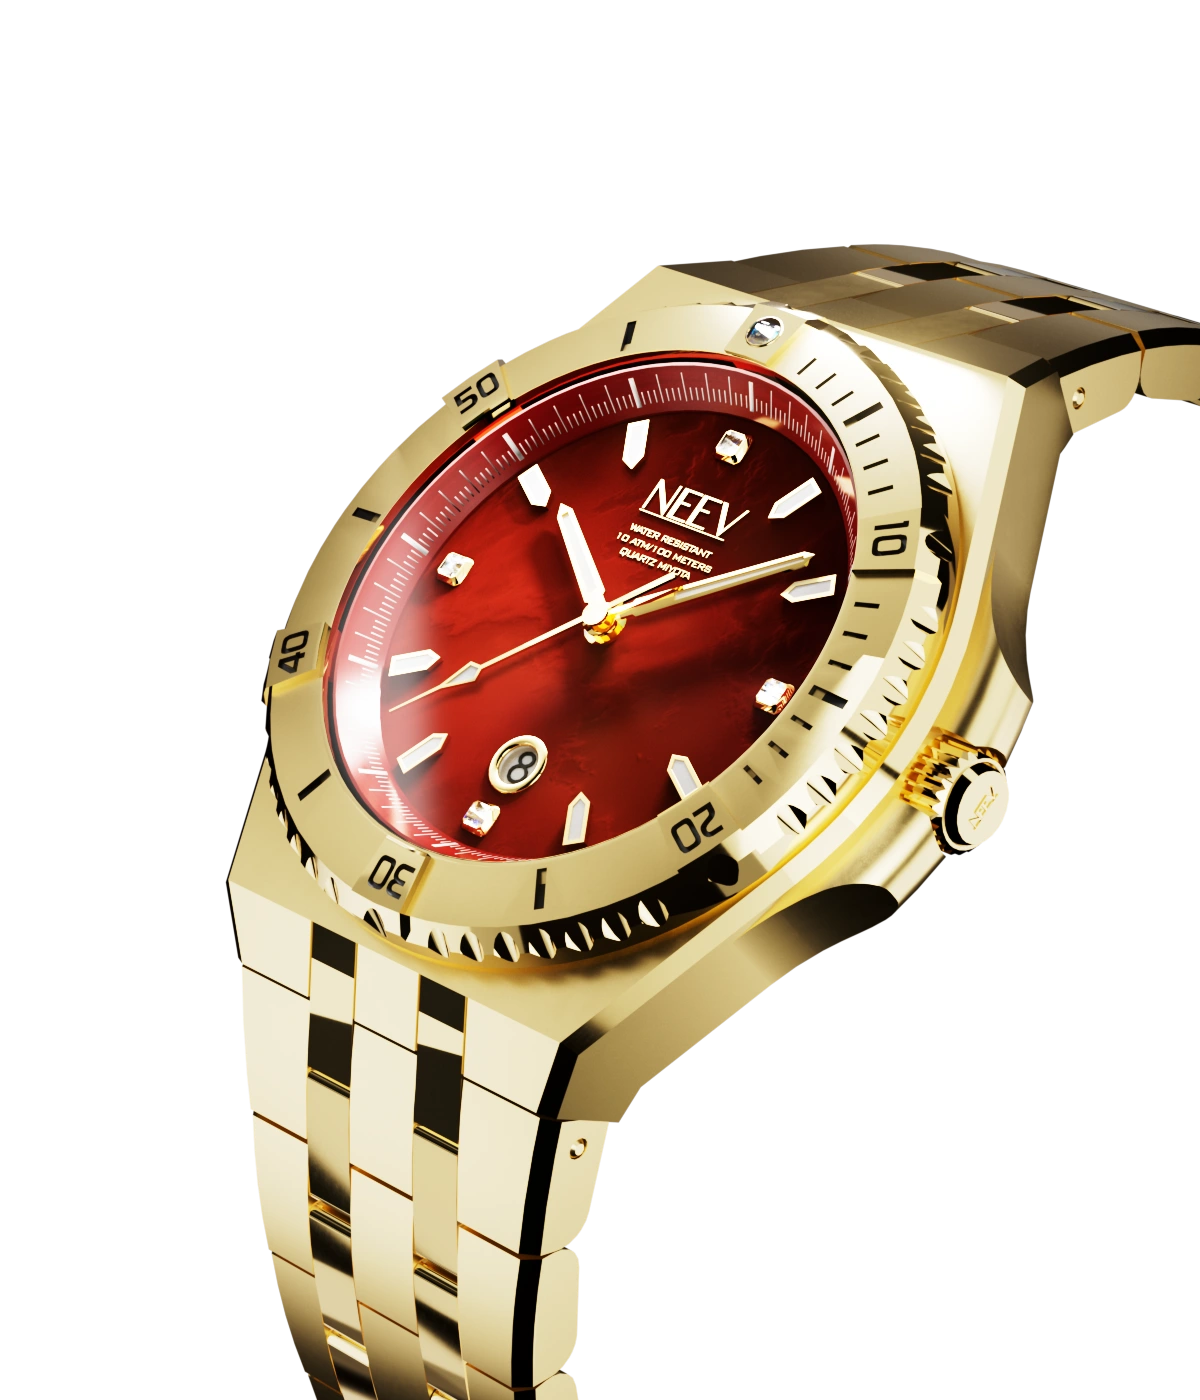 Scarlet watch